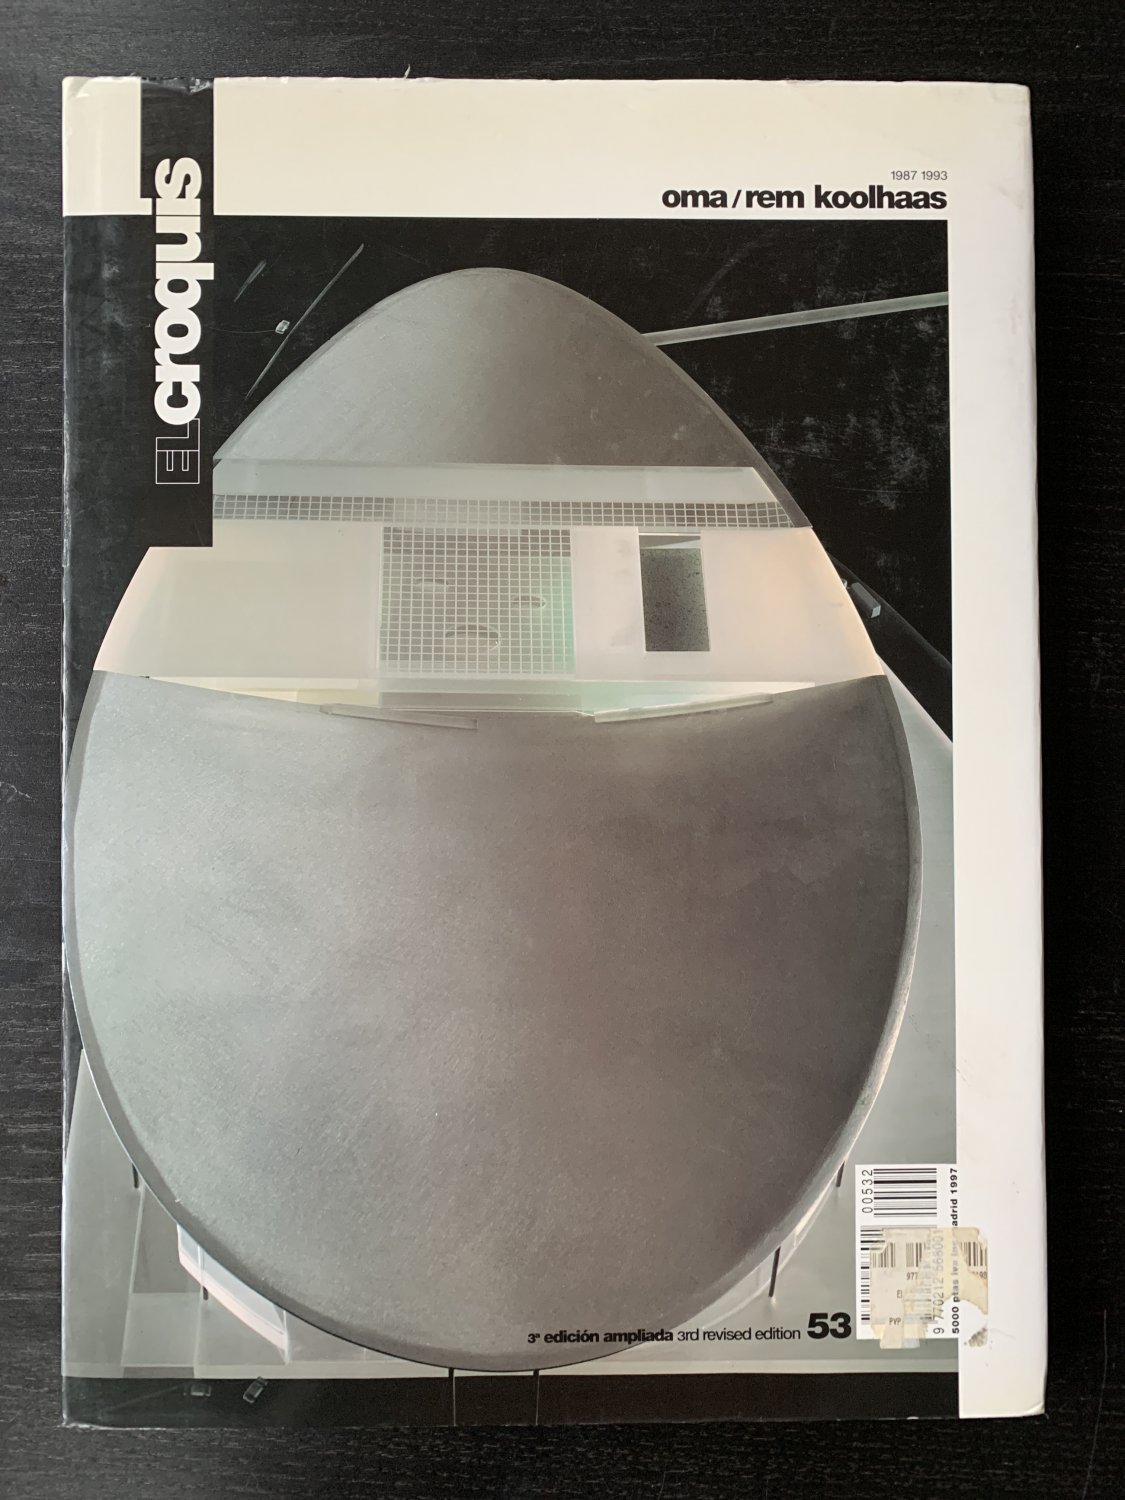 OMA/Rem Koolhaas 1987 1993“ (OMA/Rem Koolhaas , El Croquis) – Buch 